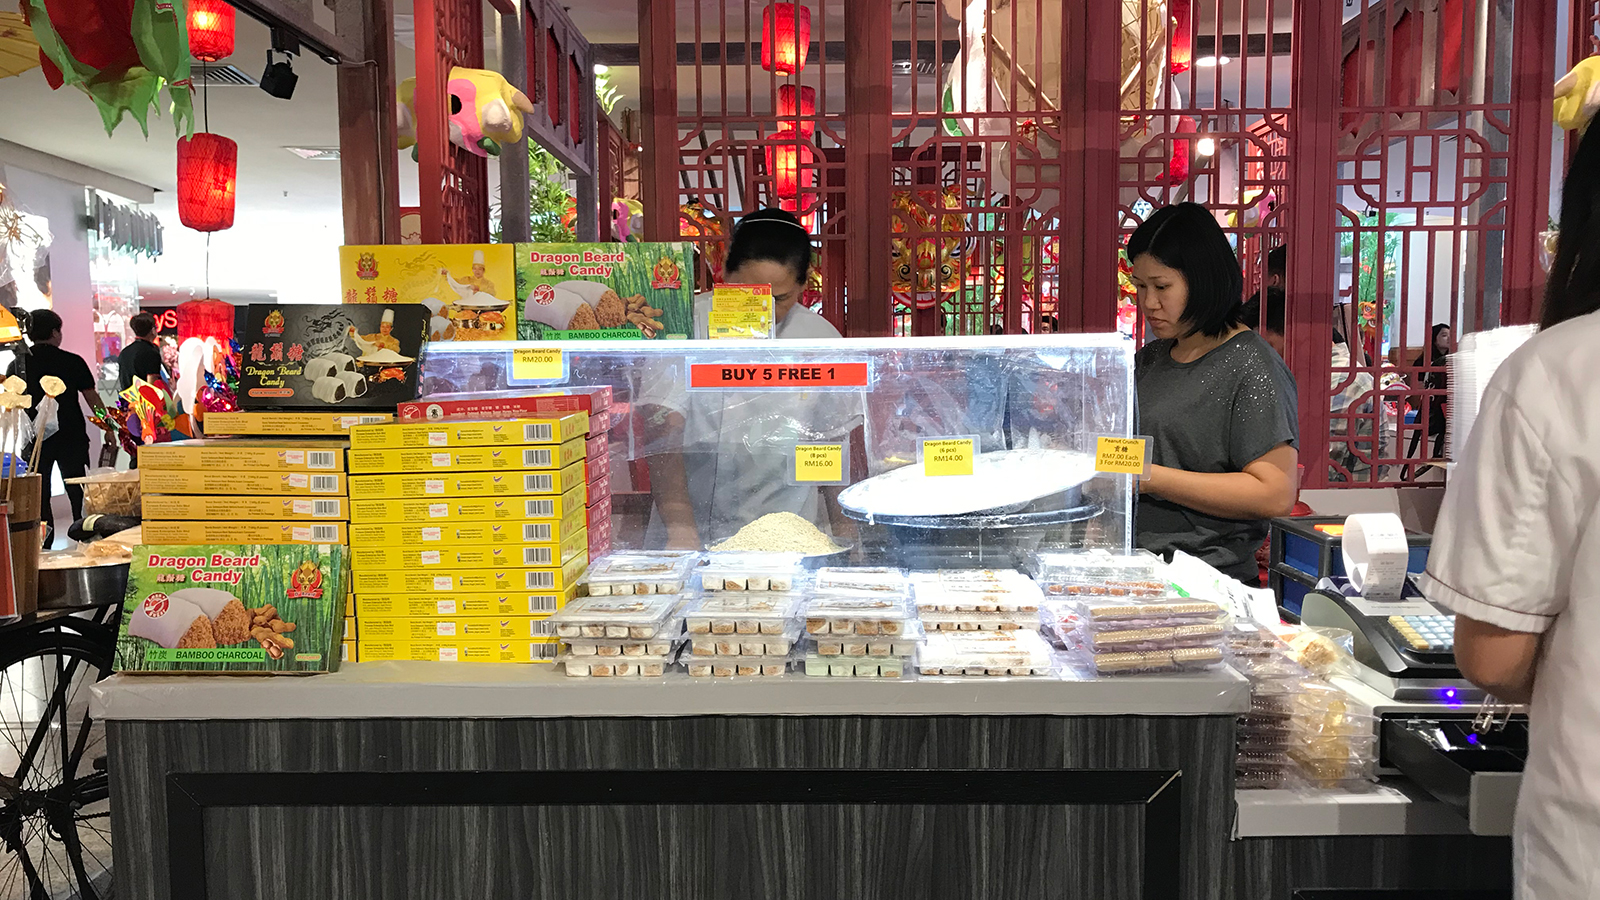 بيع الحلوى يلقى رواجا خلال الأعياد في ماليزيا(الجزيرة)